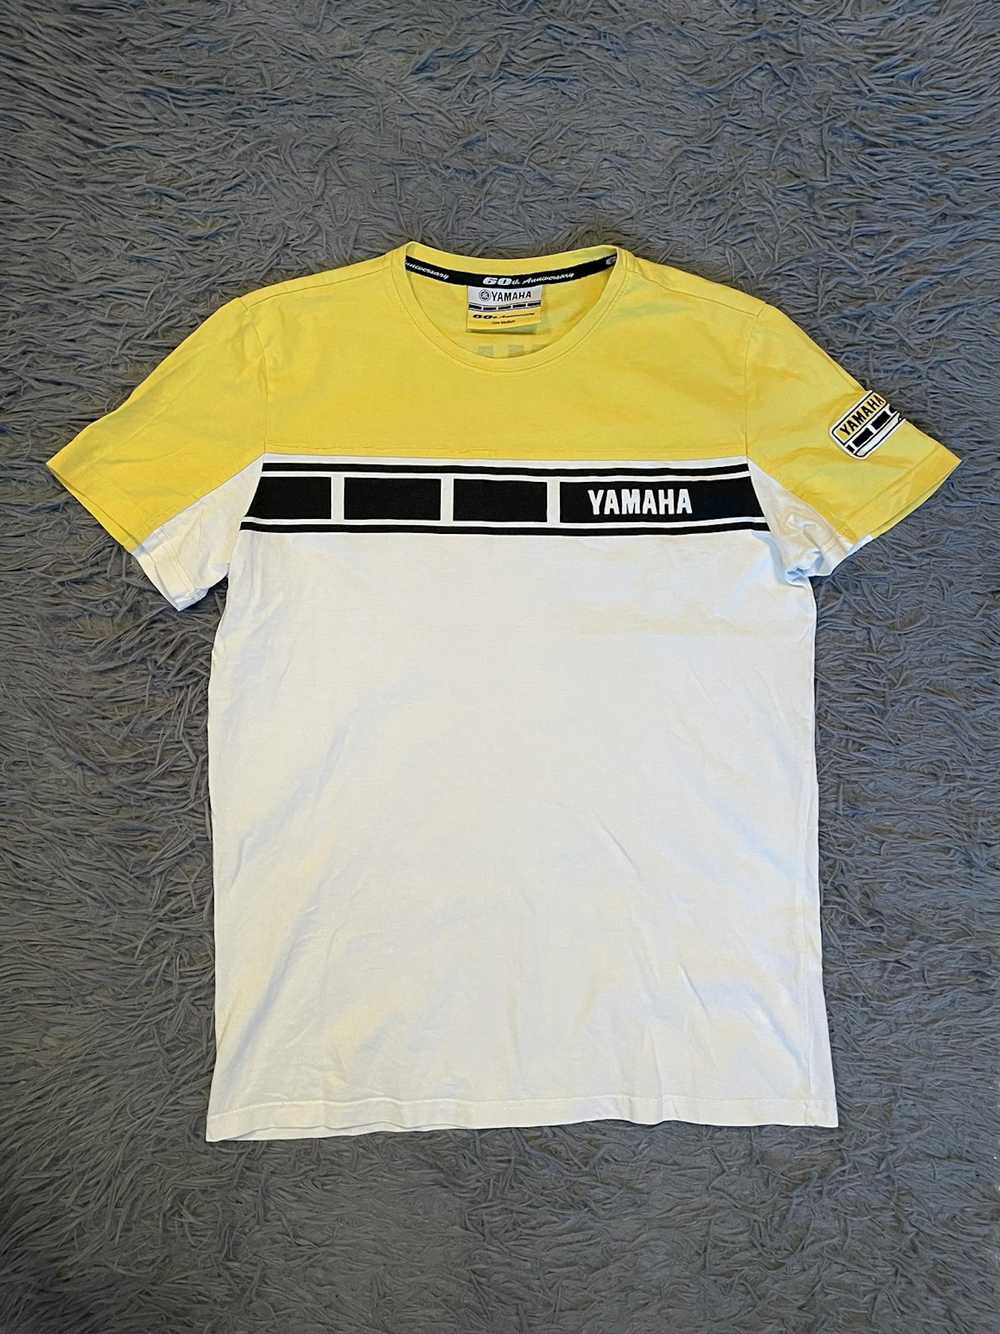 Racing × Vintage × Yamaha Yamaha 60th anniversary… - image 2